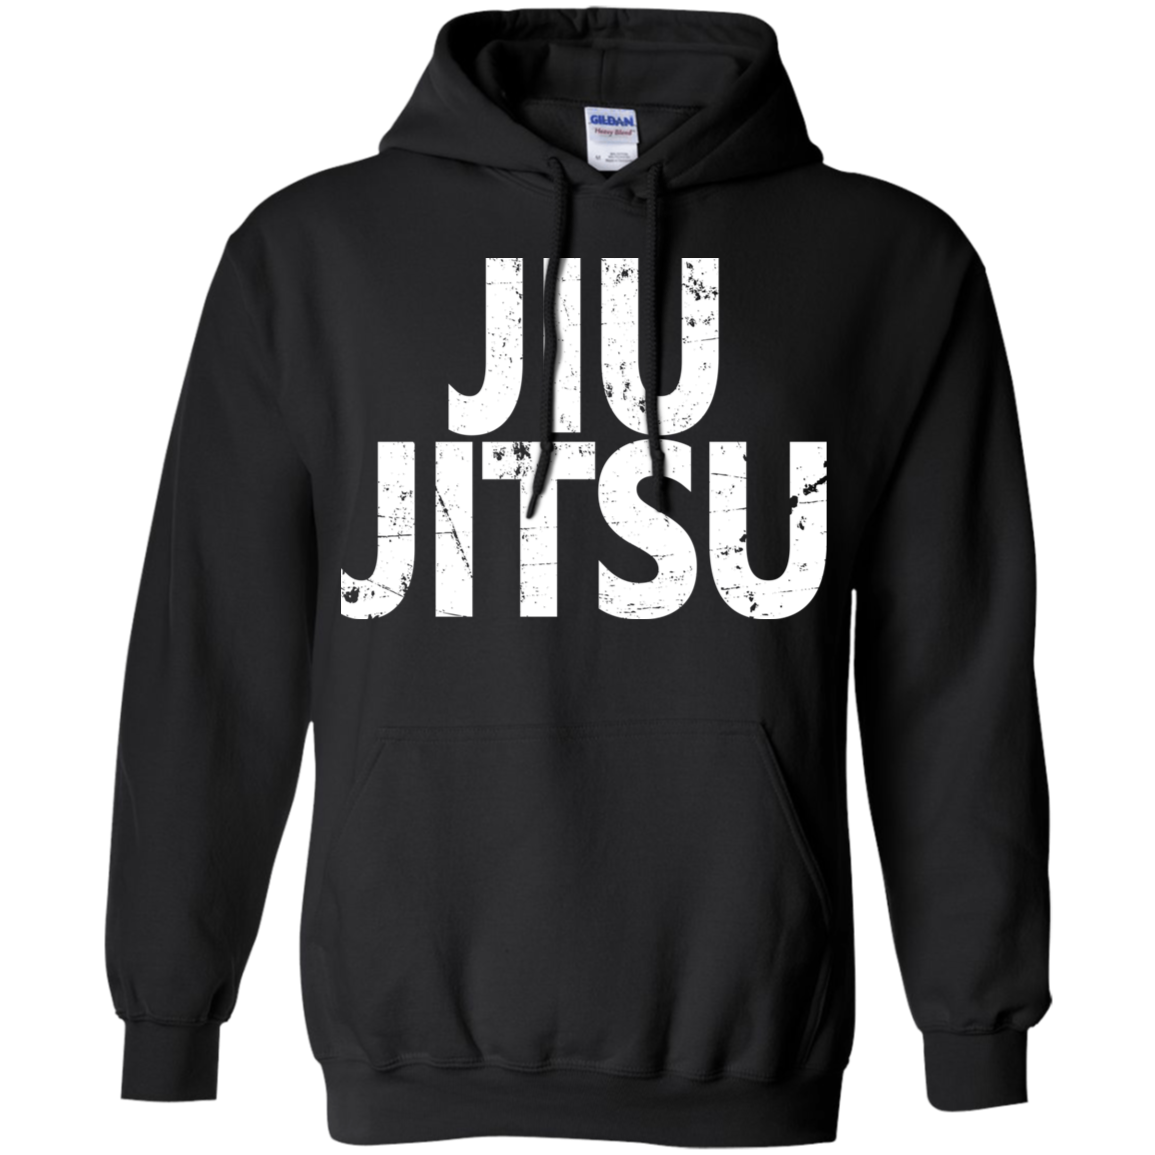 Brazilian Jiu-Jitsu BJJ Brazilian Jiu Jitsu Hoodie